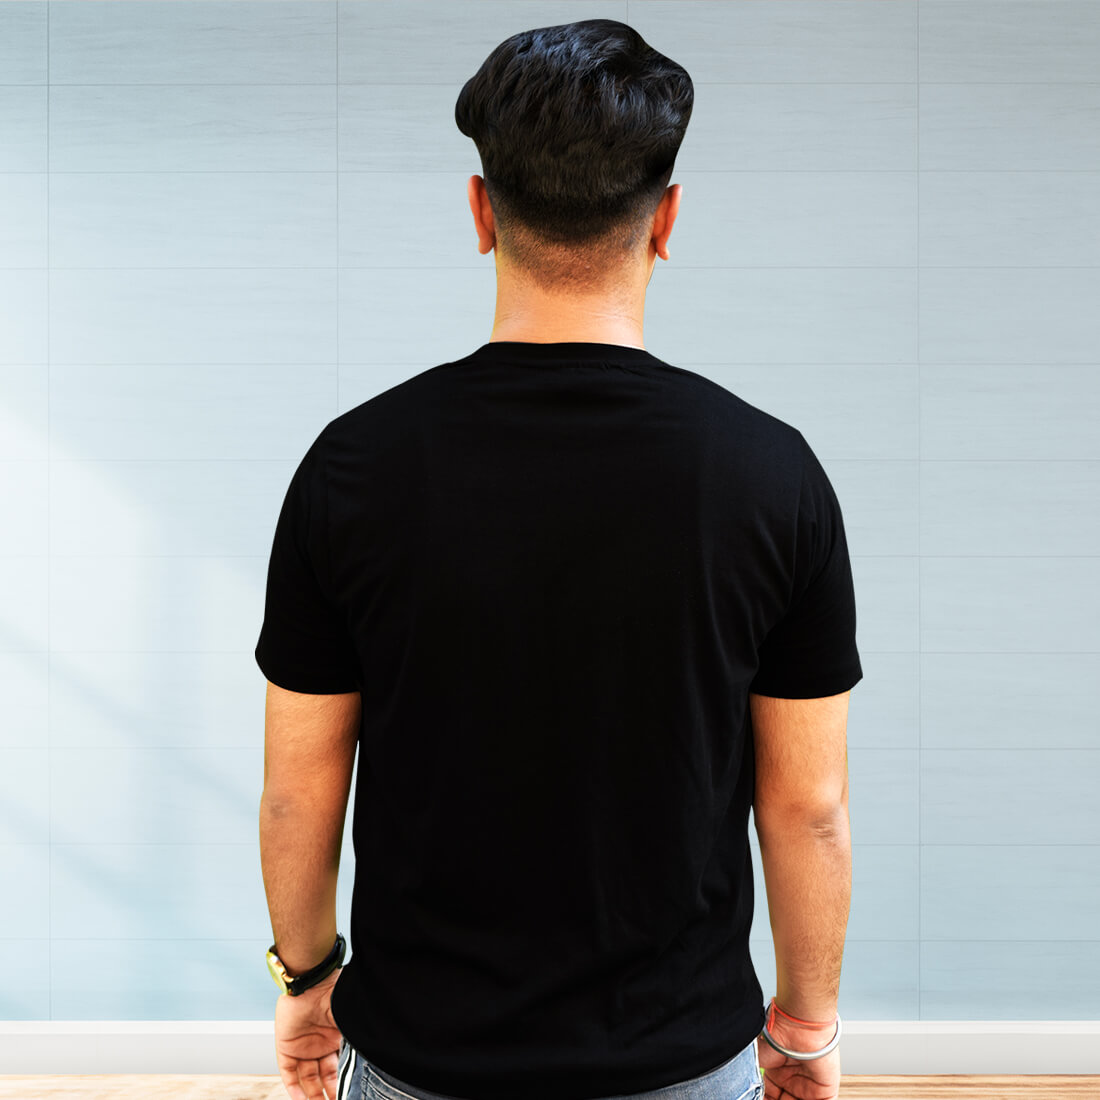 Adiyogi Images black T-Shirt Front and Back